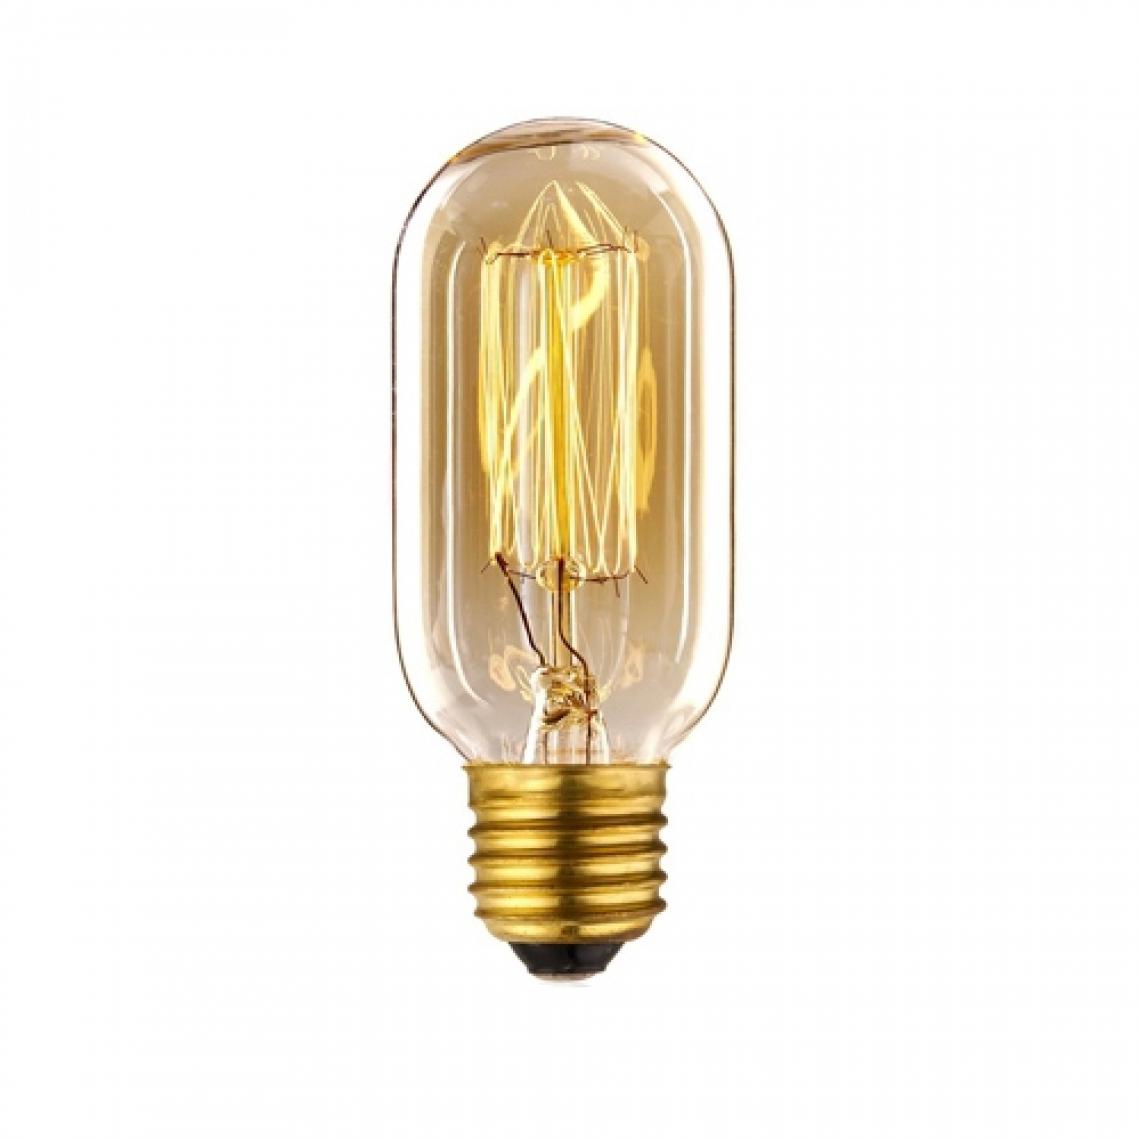 Wewoo - E27 40W rétro Edison ampoule filament Vintage à incandescenceAC 220V T45 - Ampoules LED